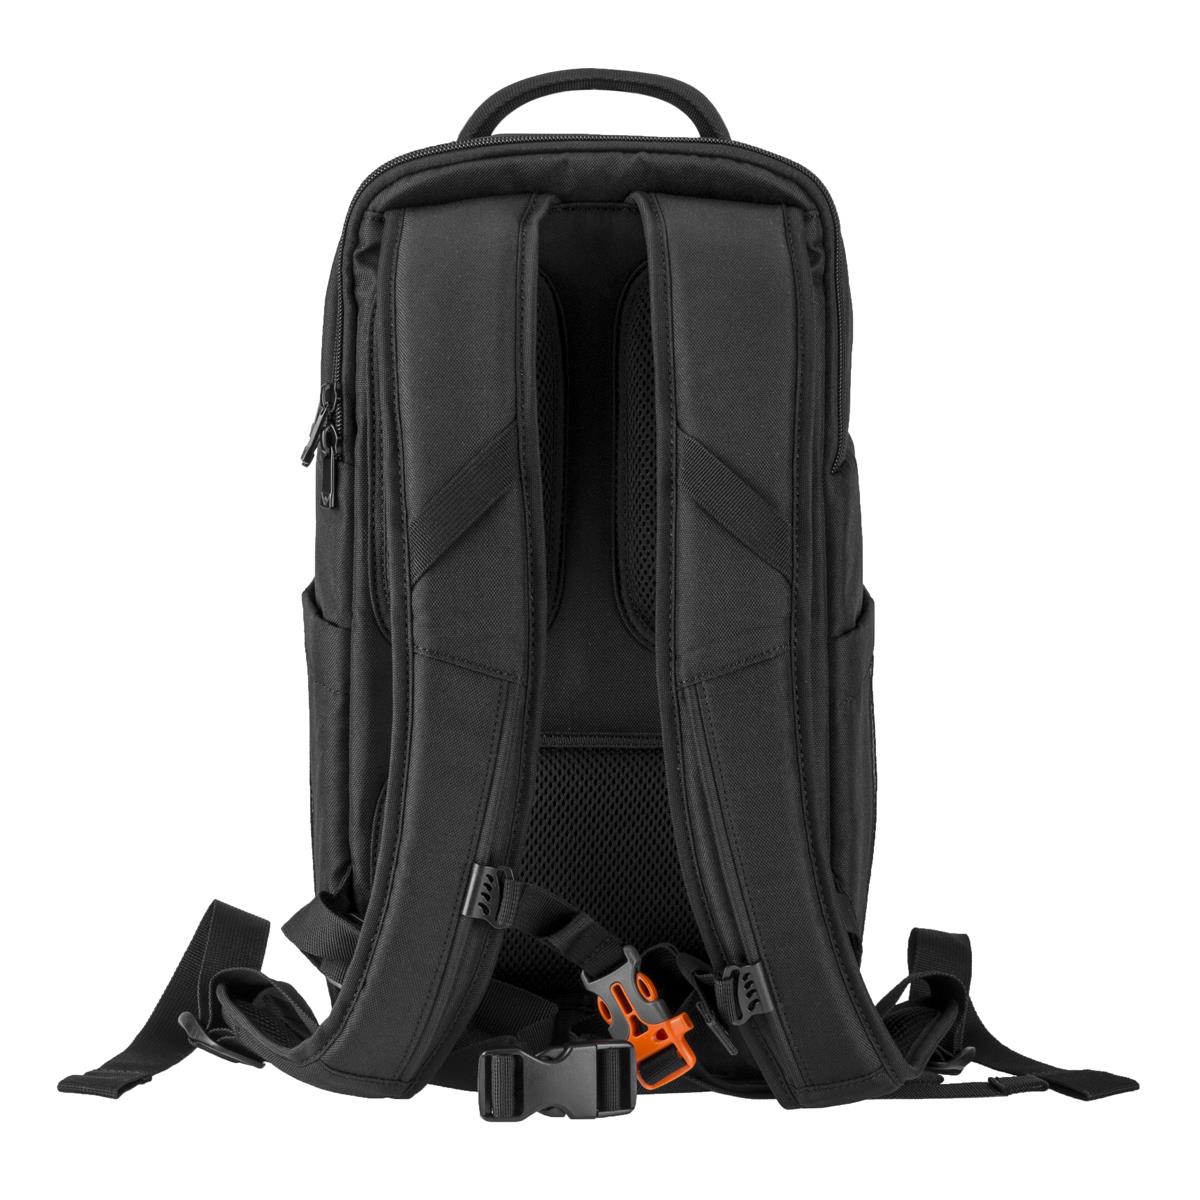 Slinger Alpine 190 Lightweight Backpack for Camera, Laptop or Drone ...